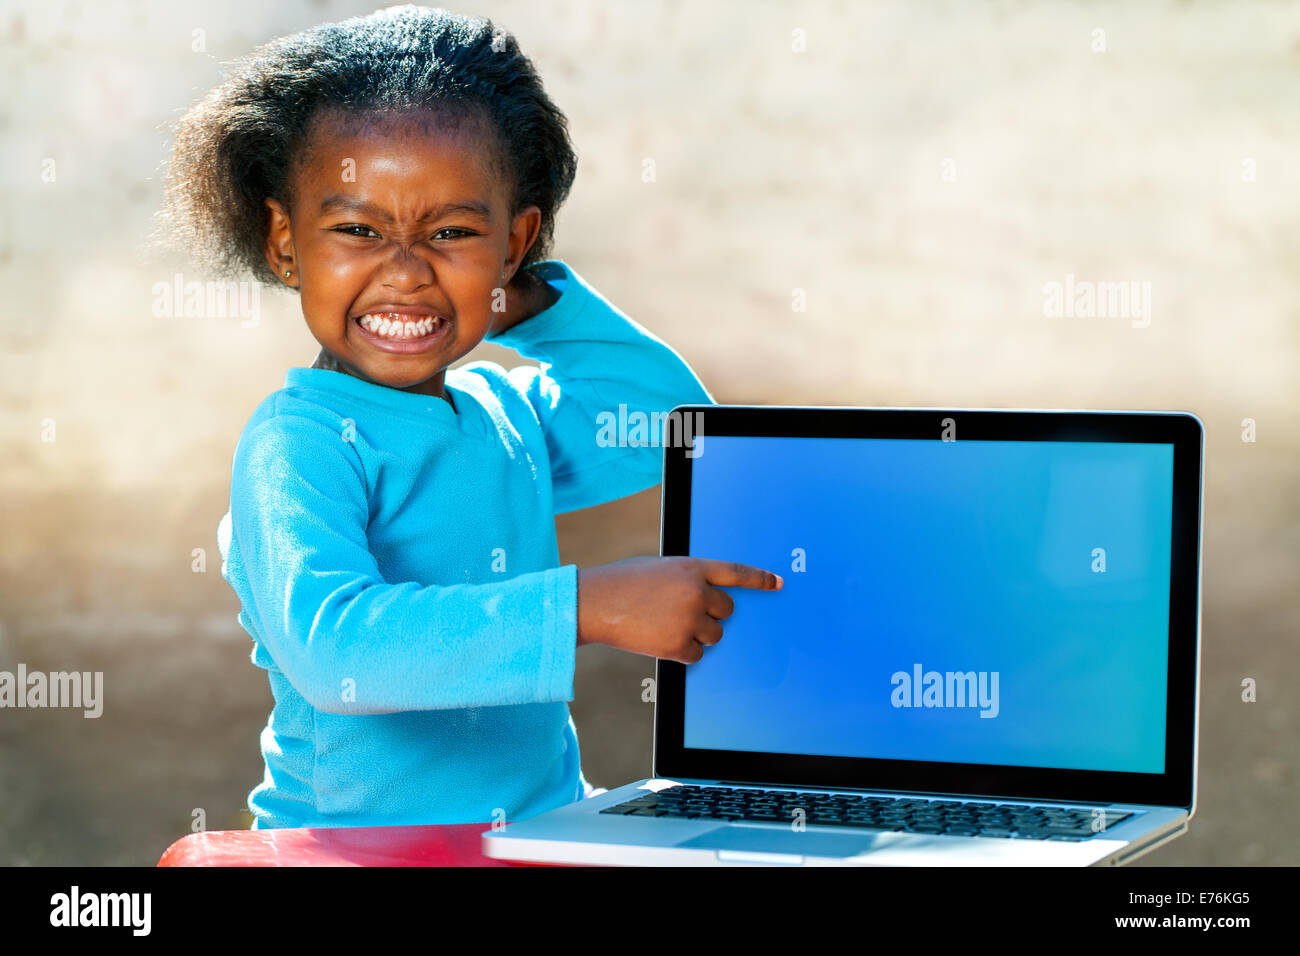 Ritratto di ragazza africana con la faccia buffa espressione rivolta a vuoto allo schermo del laptop. Foto Stock